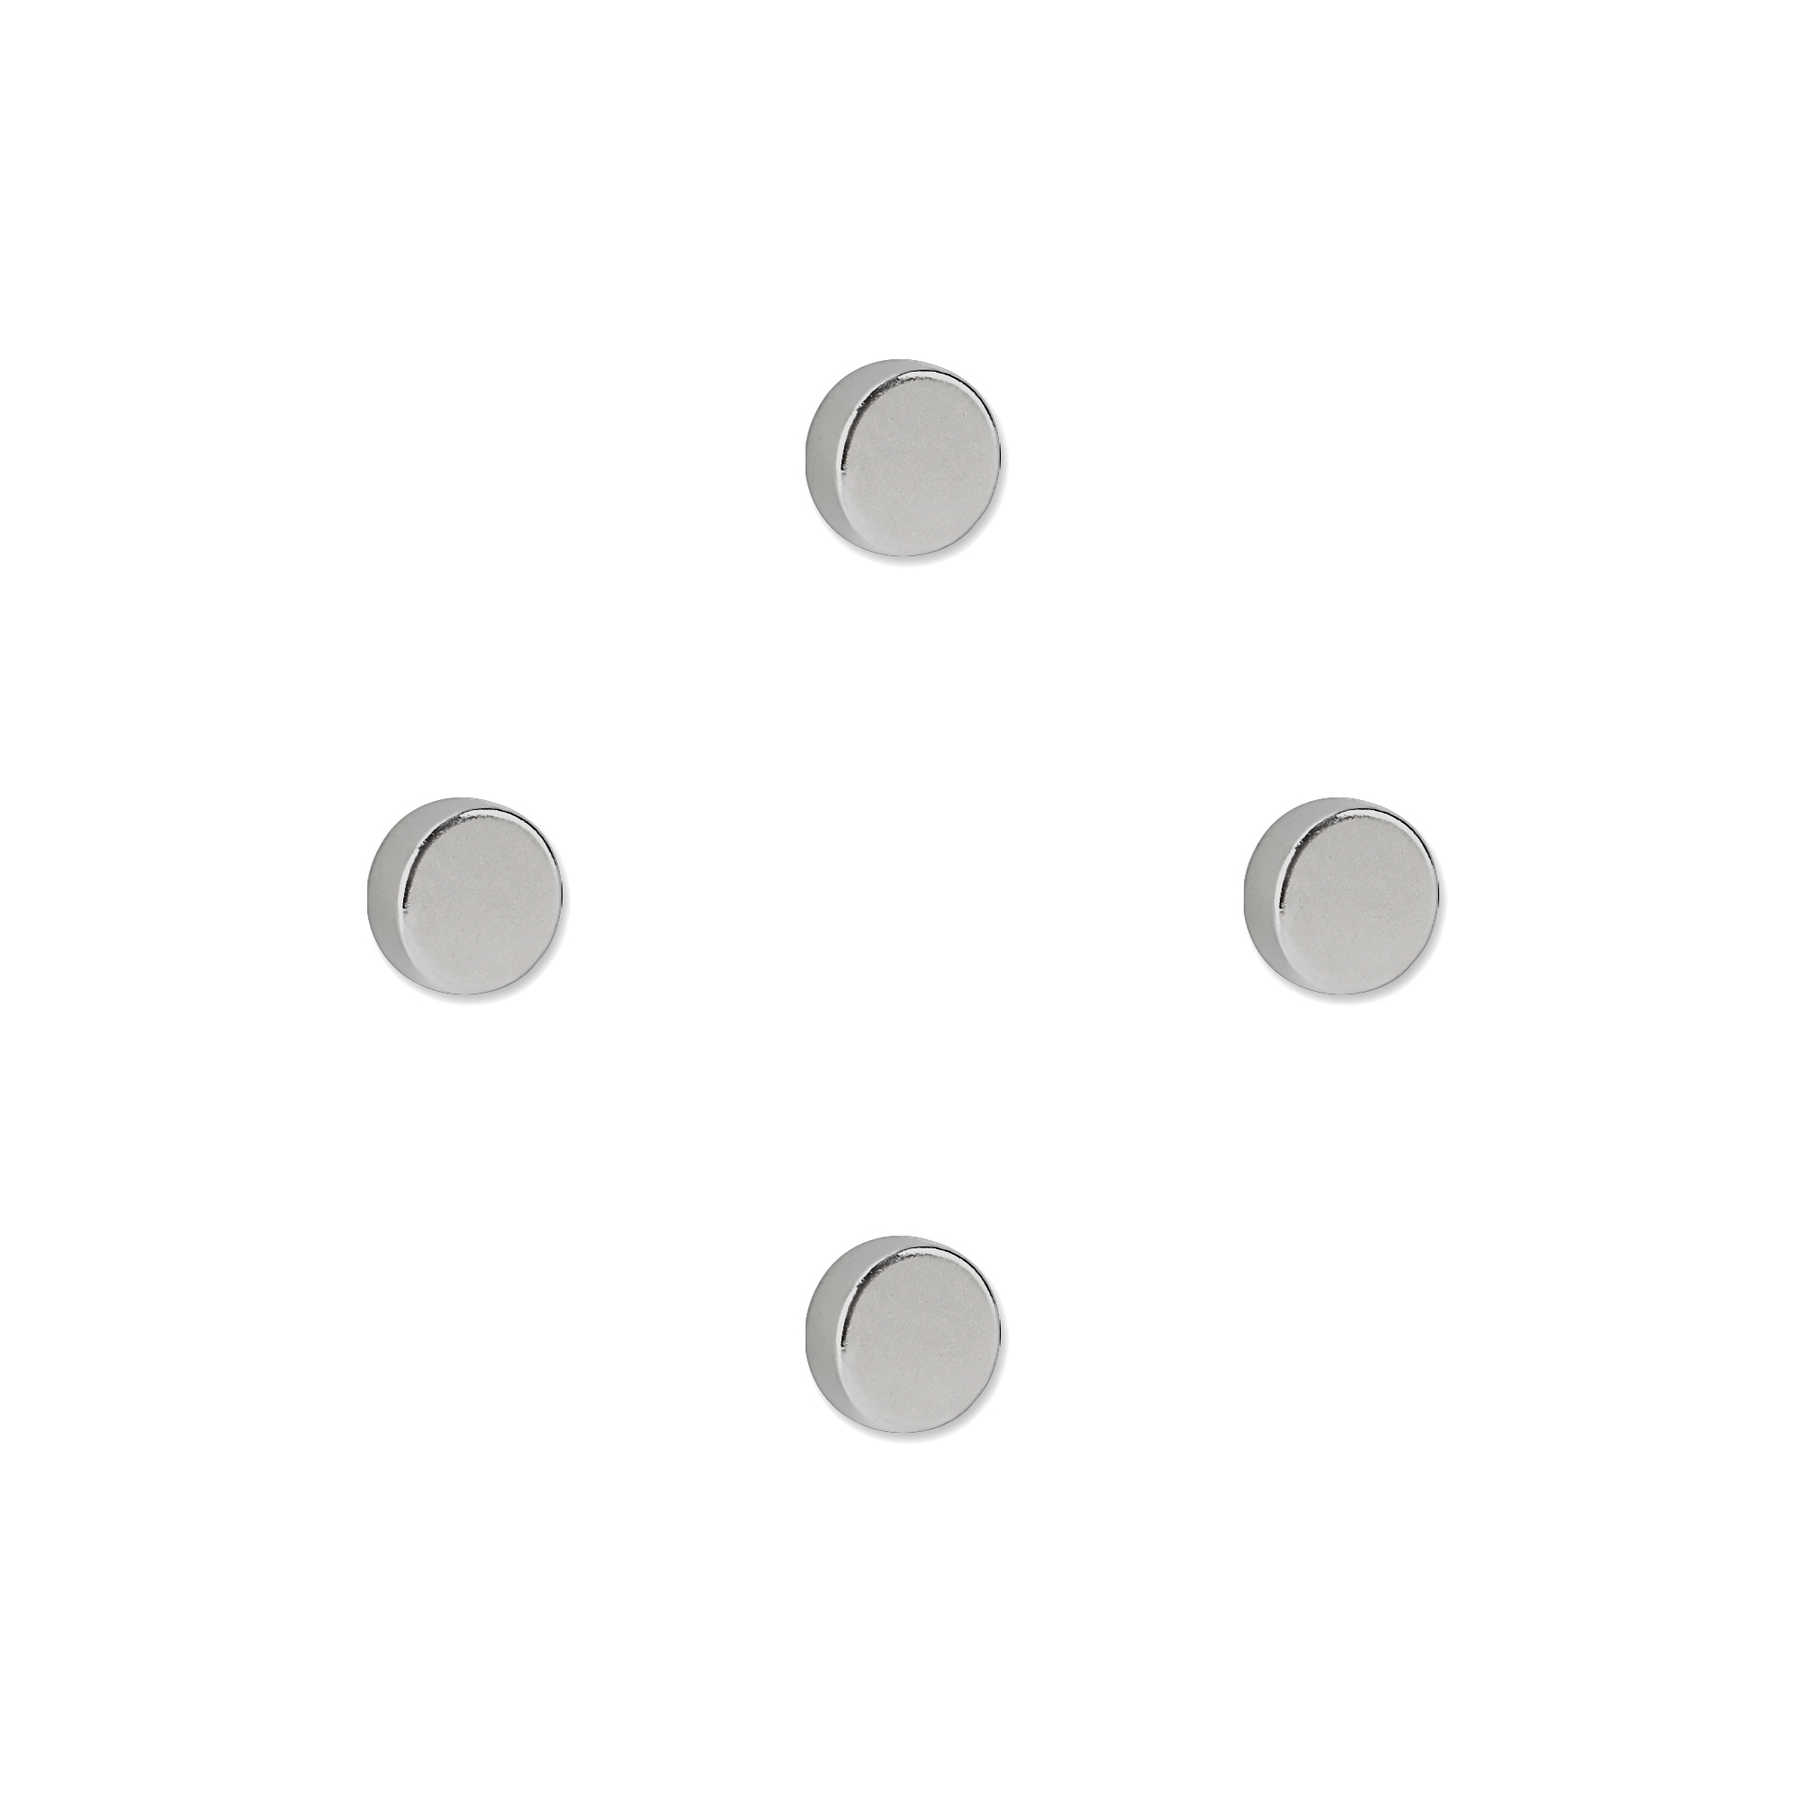 4er-Set runde Starkmagneten in 20 x 5 mm
